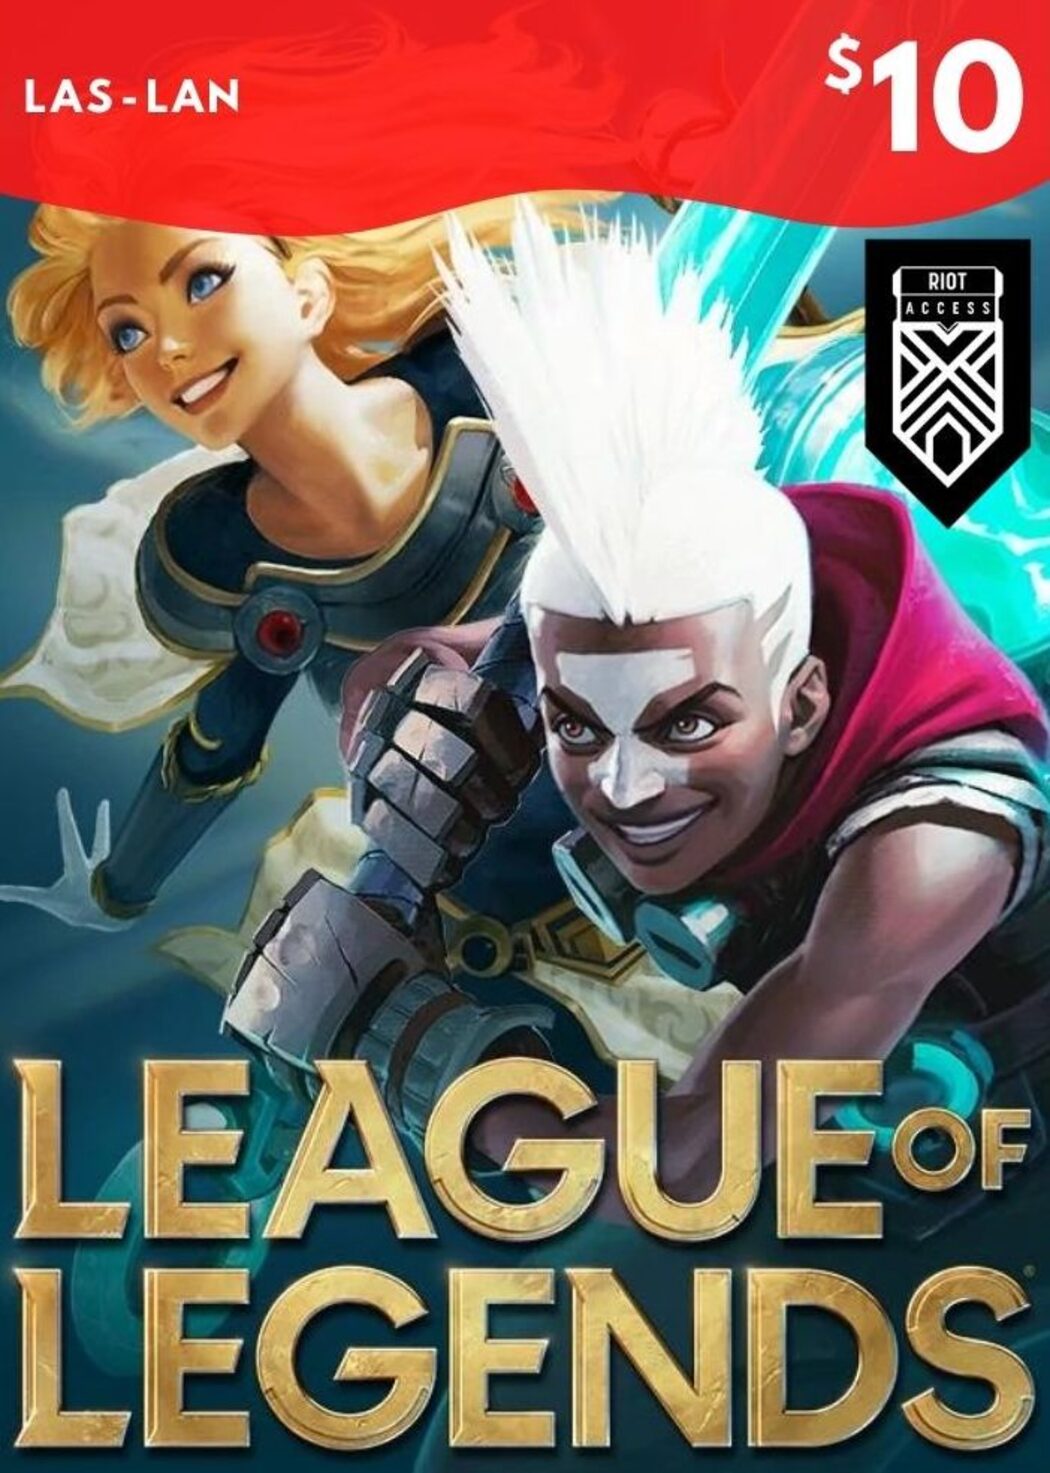 Stige At bidrage Variant Buy League of Legends Gift Card 10 USD - LAS/LAN Server Only | ENEBA